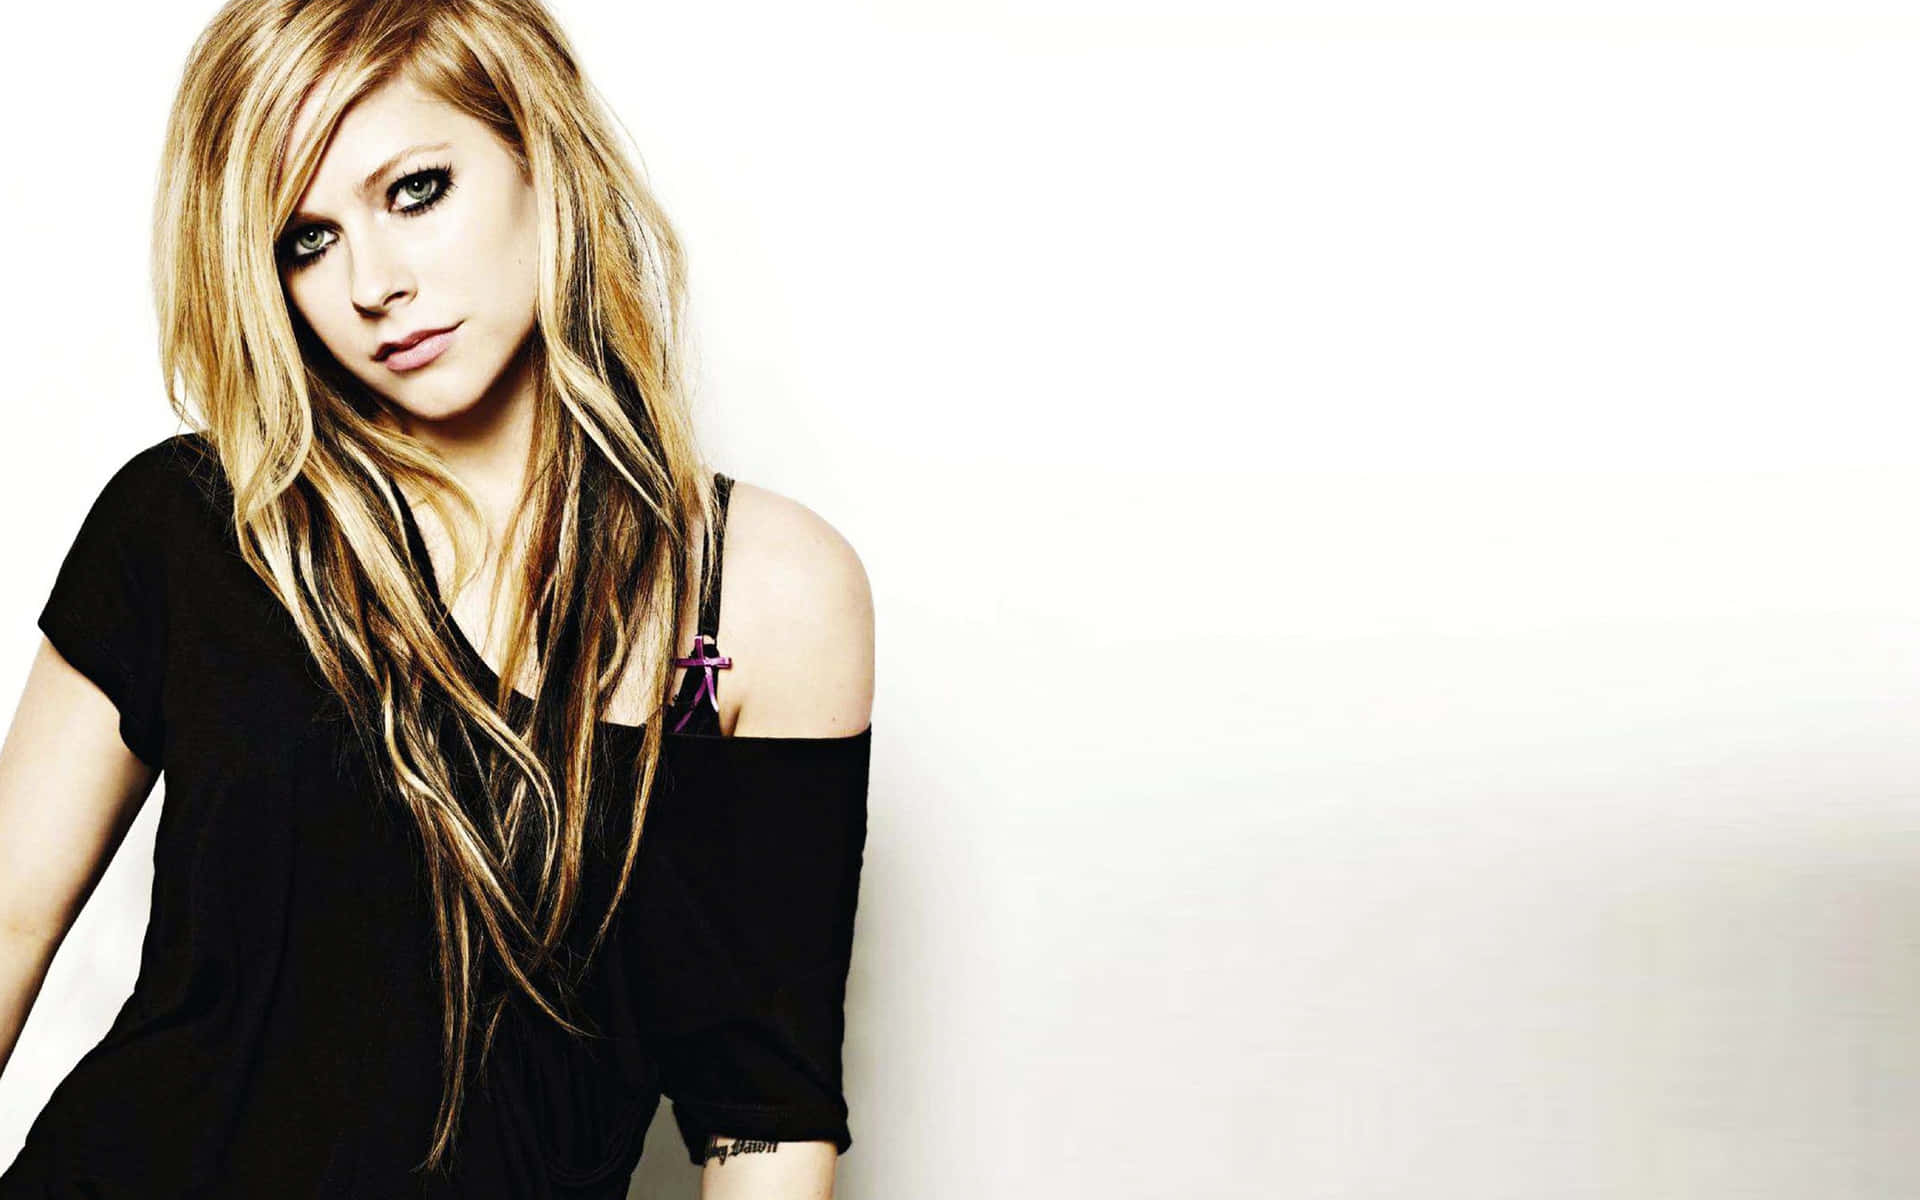 Avril Lavigne - the Rock Star